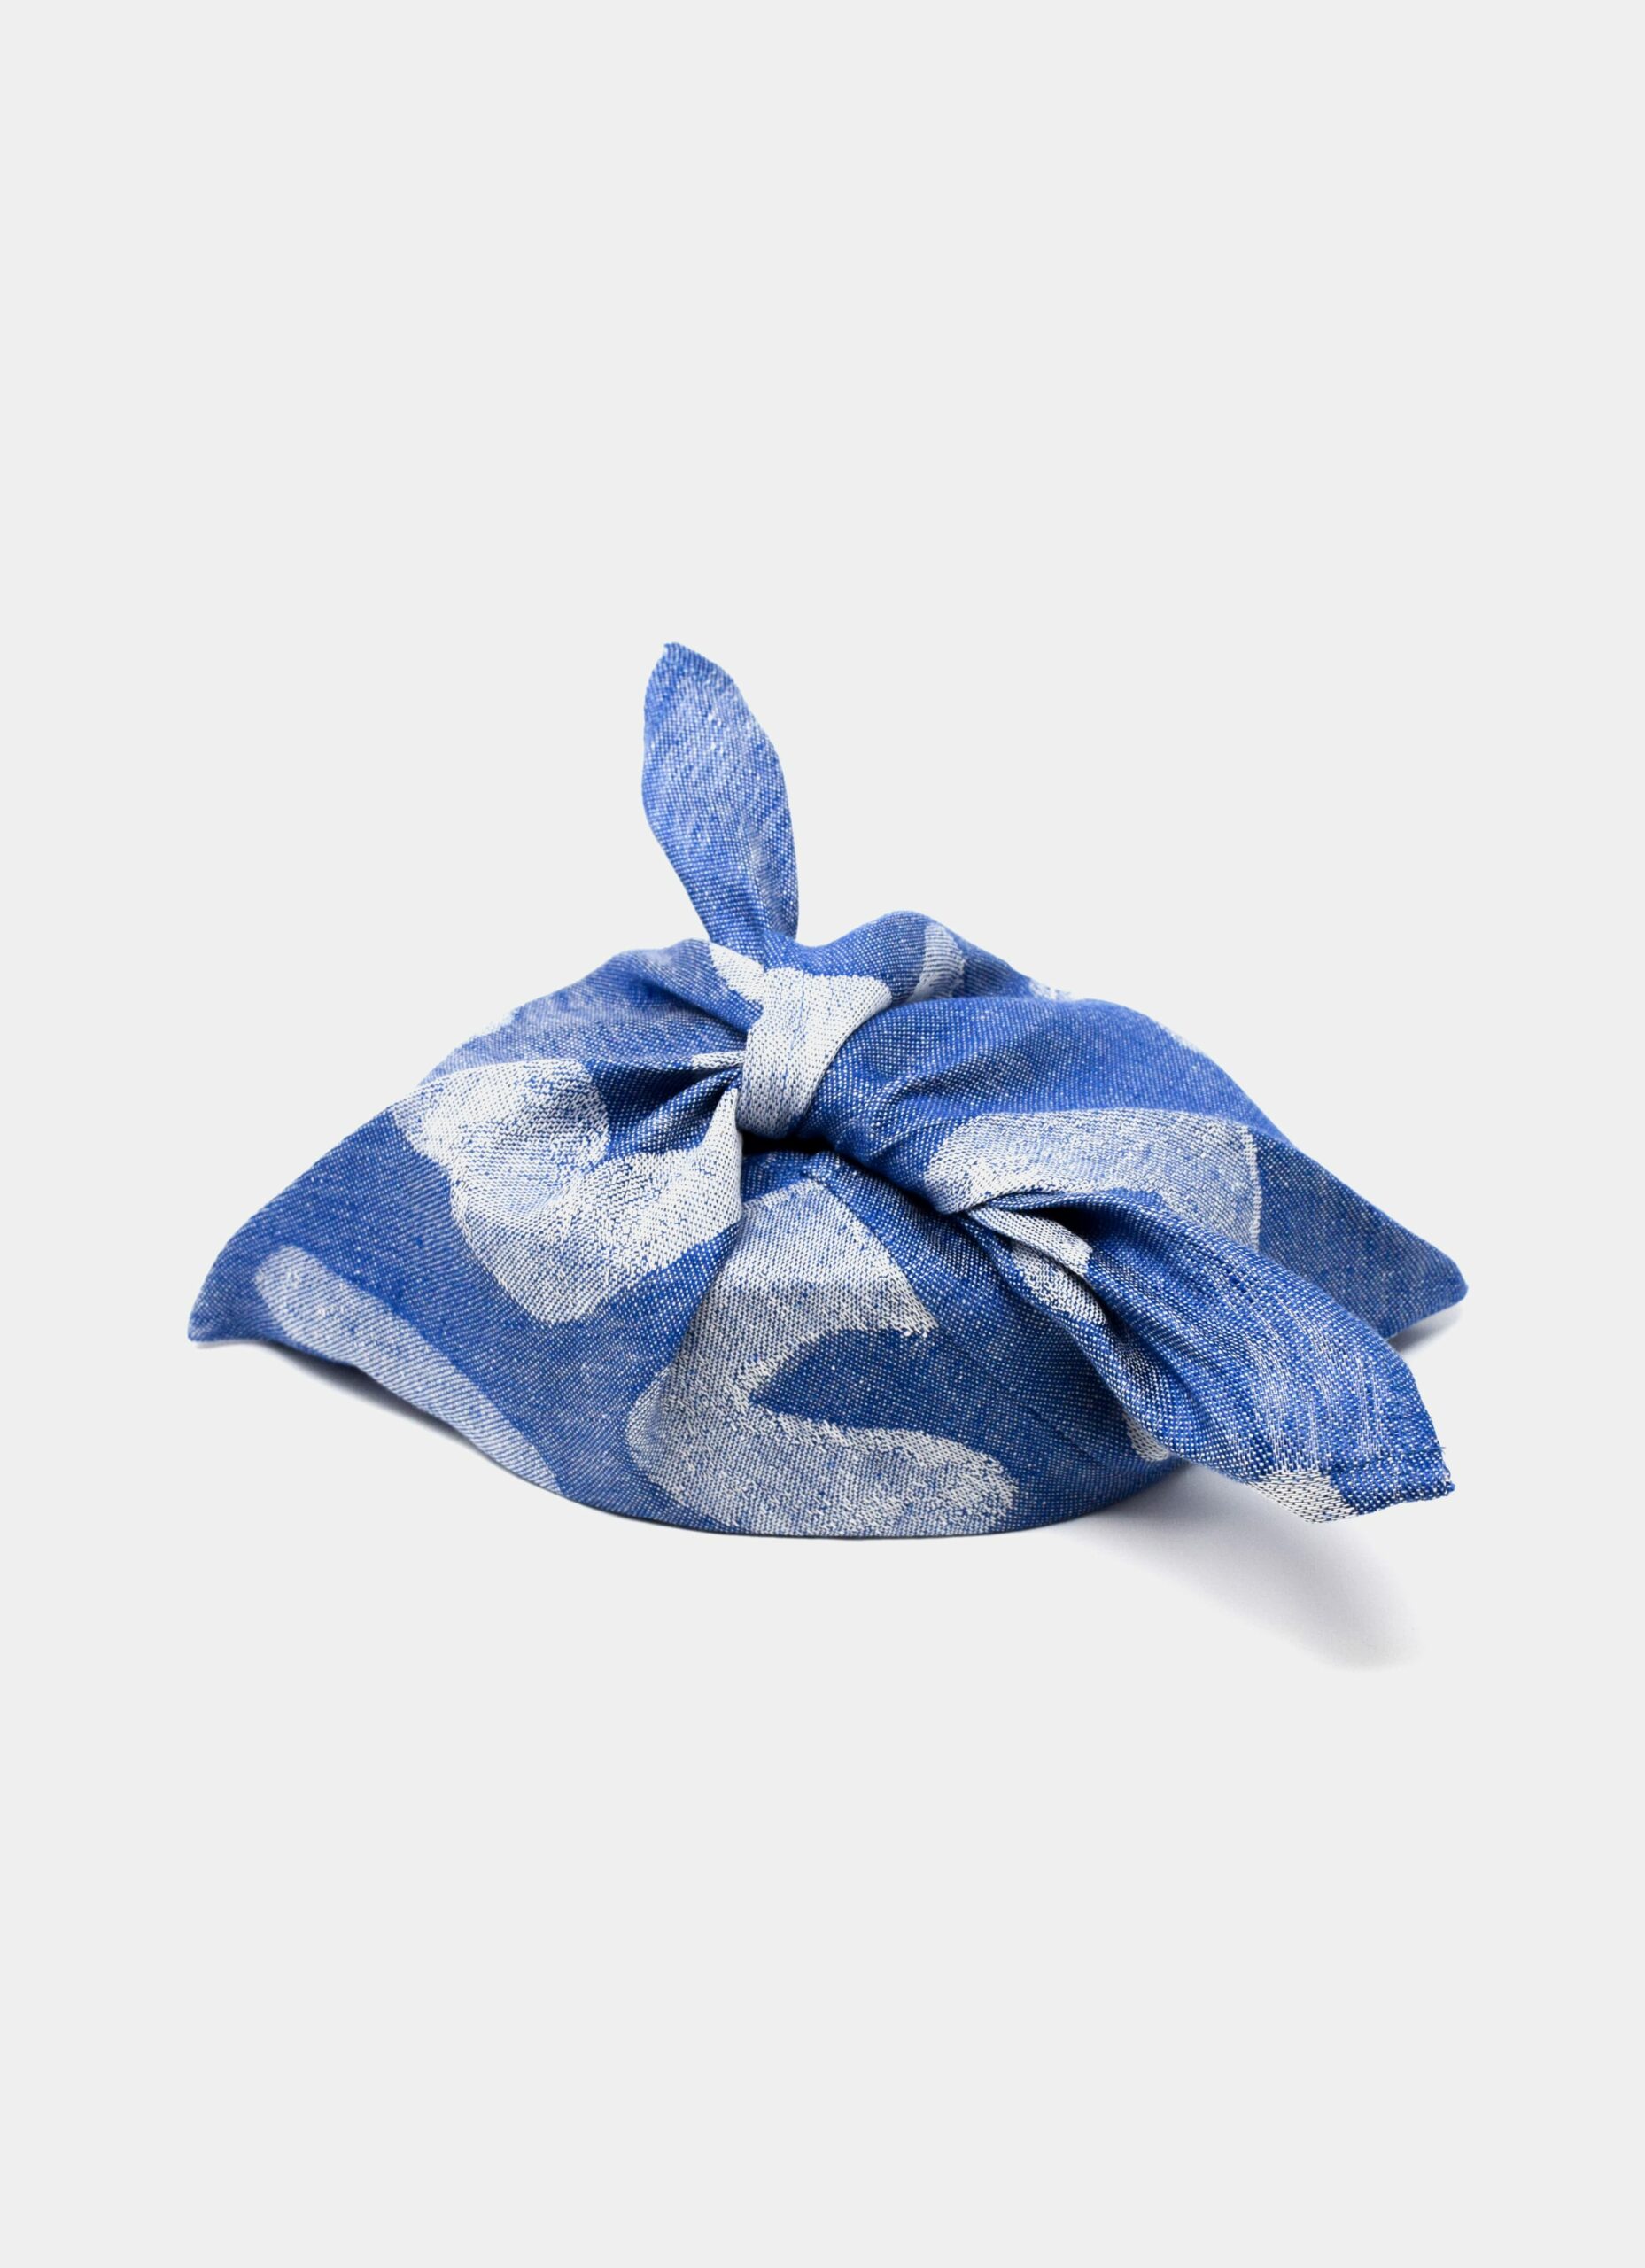 Fine Little Day - Udon - Linen Tie Bag - Blue